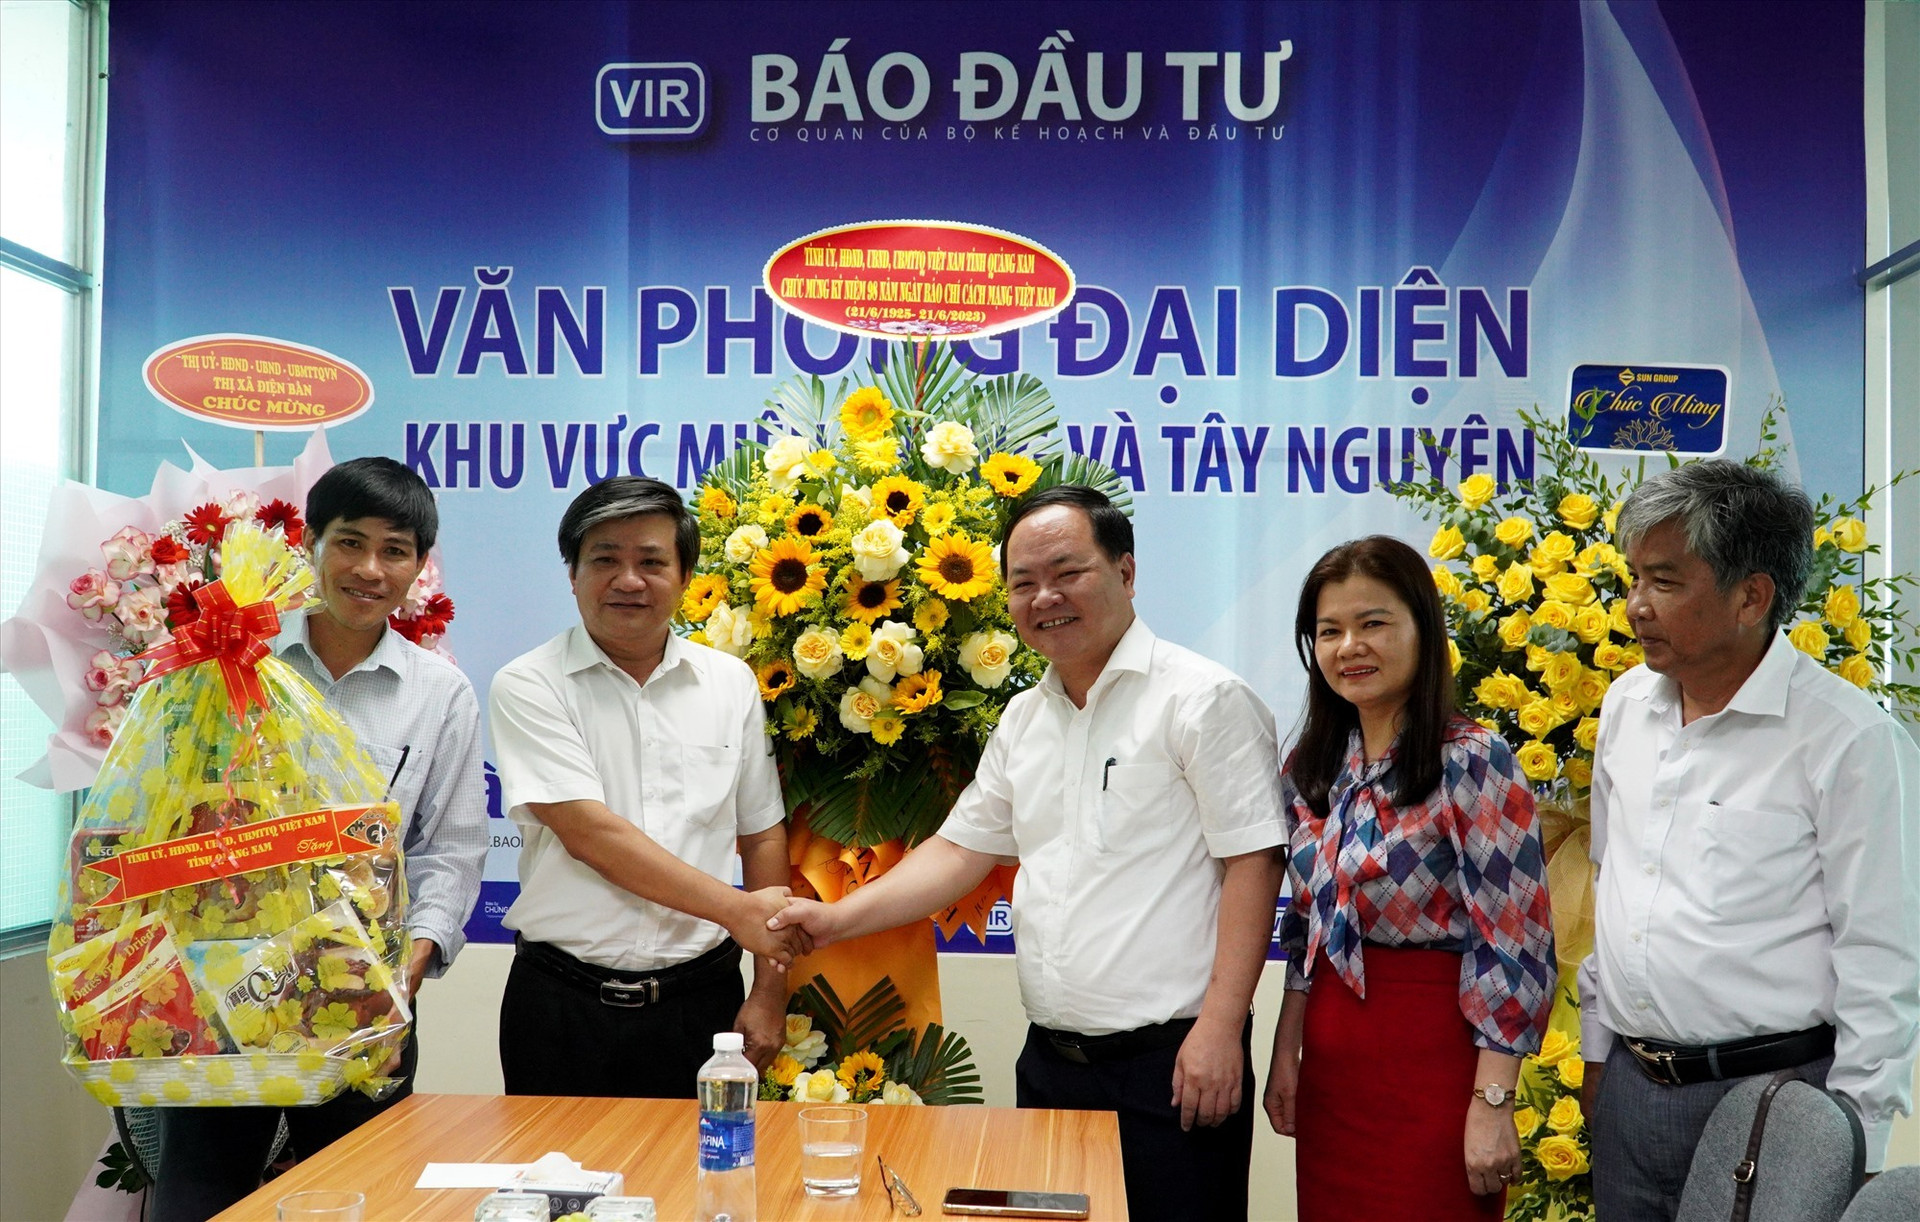 Phó Chủ tịch UBND tỉnh Nguyễn Hồng Quang thăm Văn phòng đại diện Báo Đầu tư khu vực miền Trung và Tây Nguyên. Ảnh: H.Q